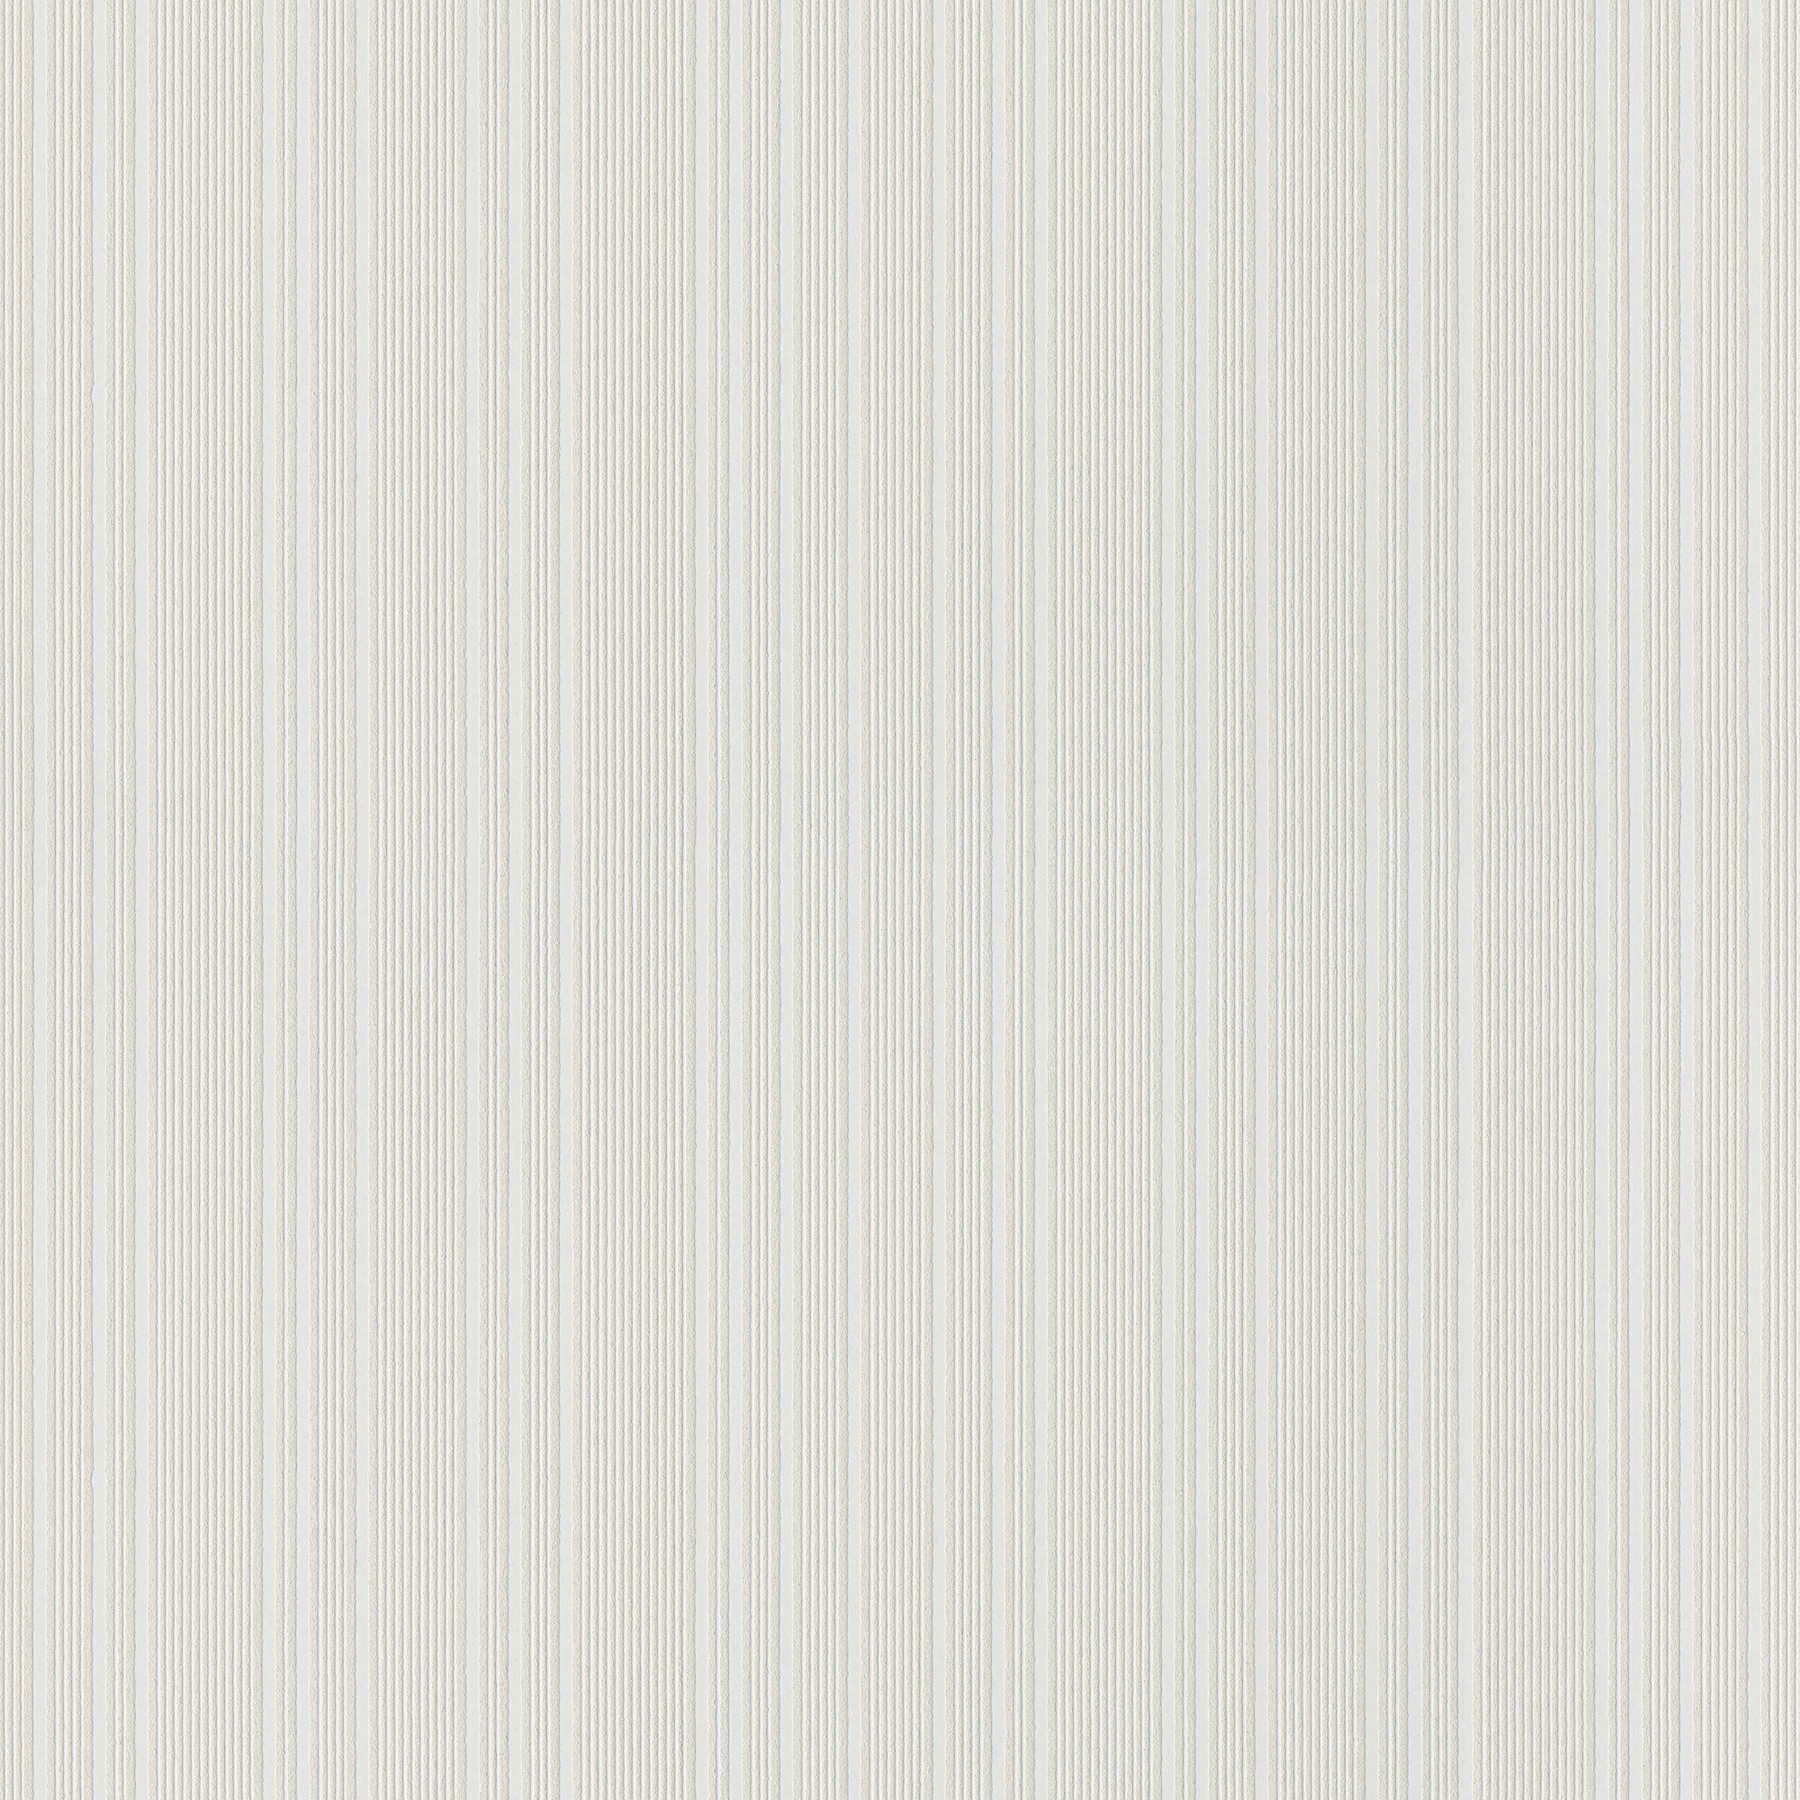 Overschilderbaar vliesbehang met lijnenpatroon - wit
